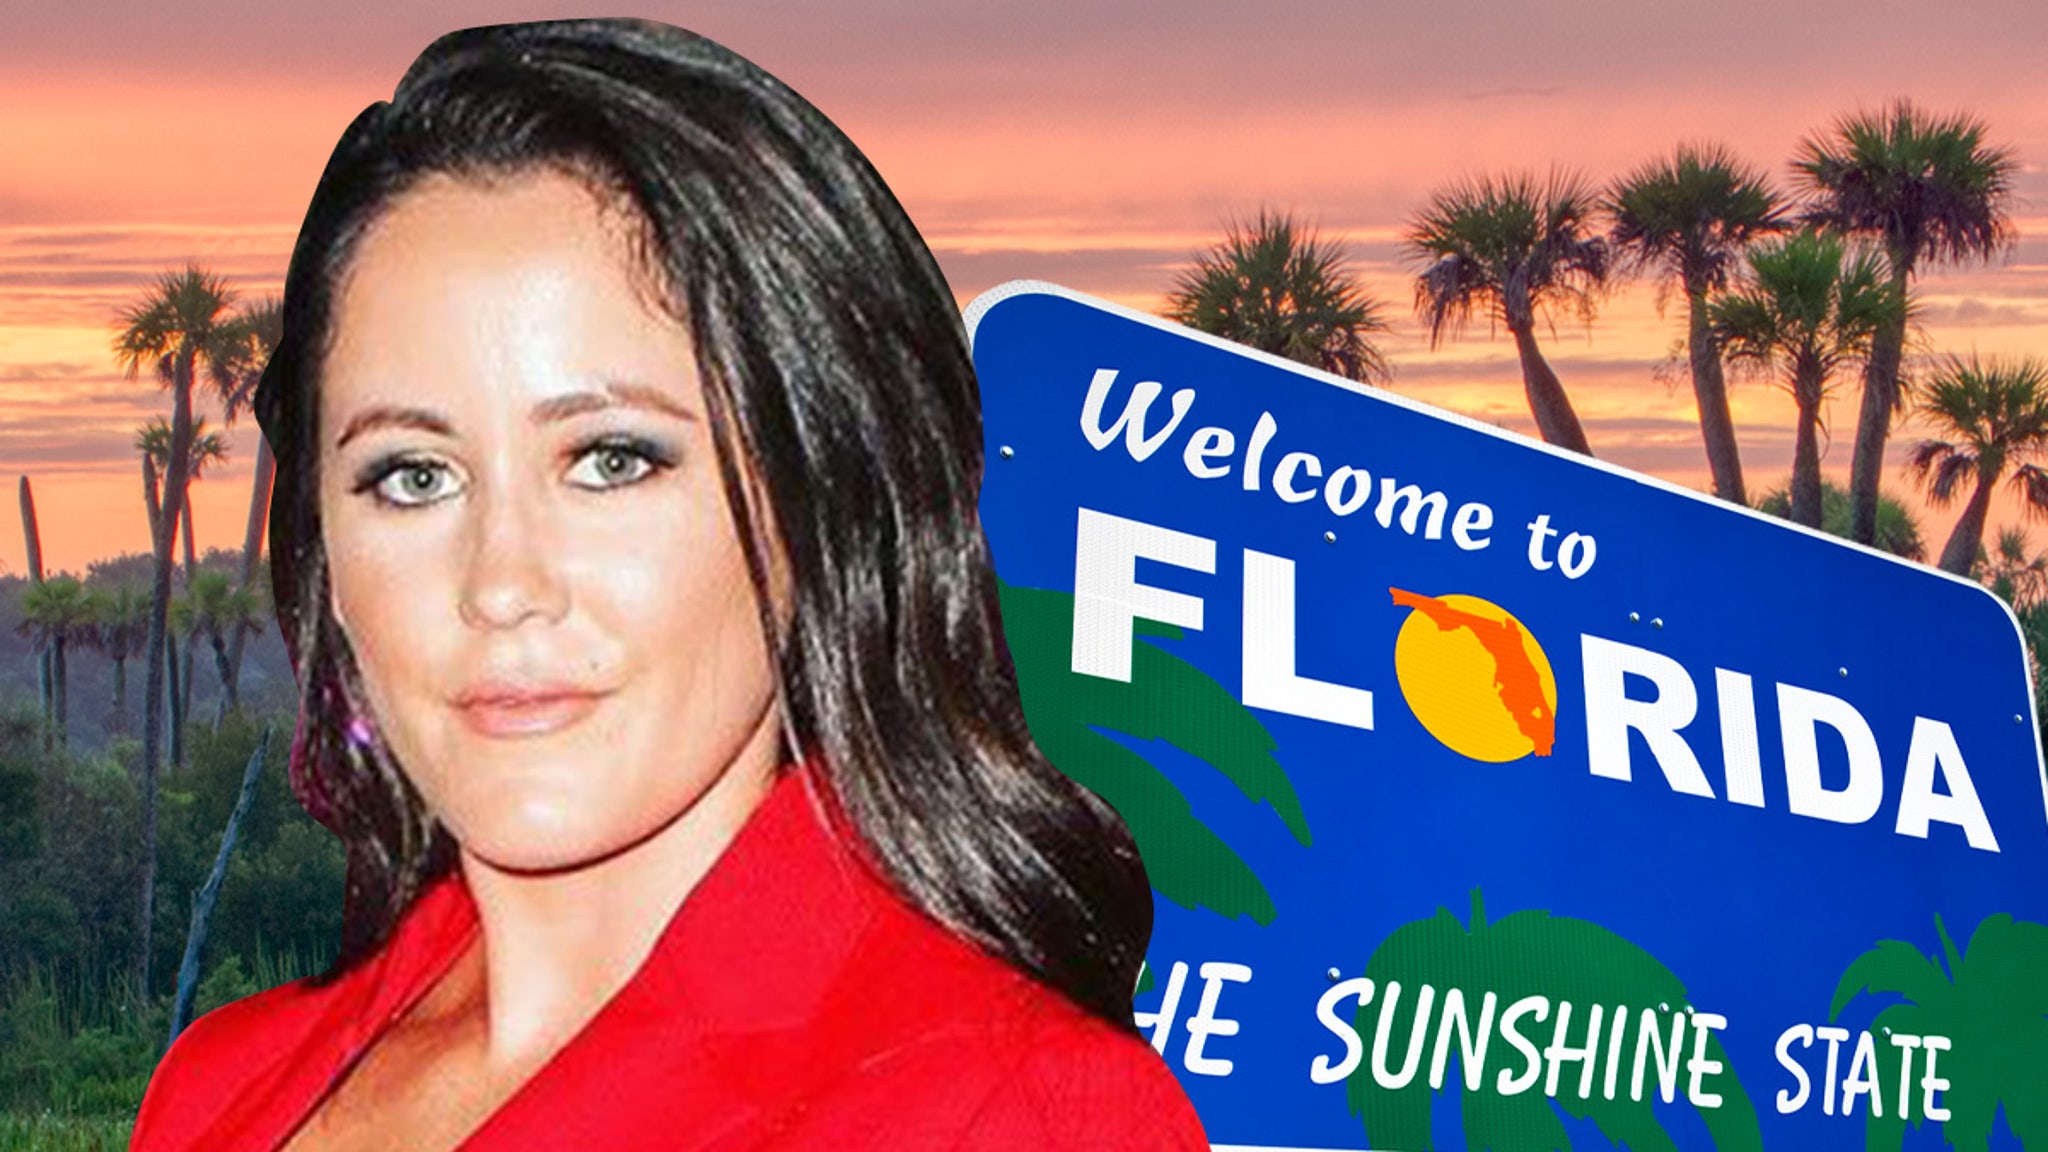 Jenelle Evans planea mudarse a Florida y quiere dejar Carolina del Norte